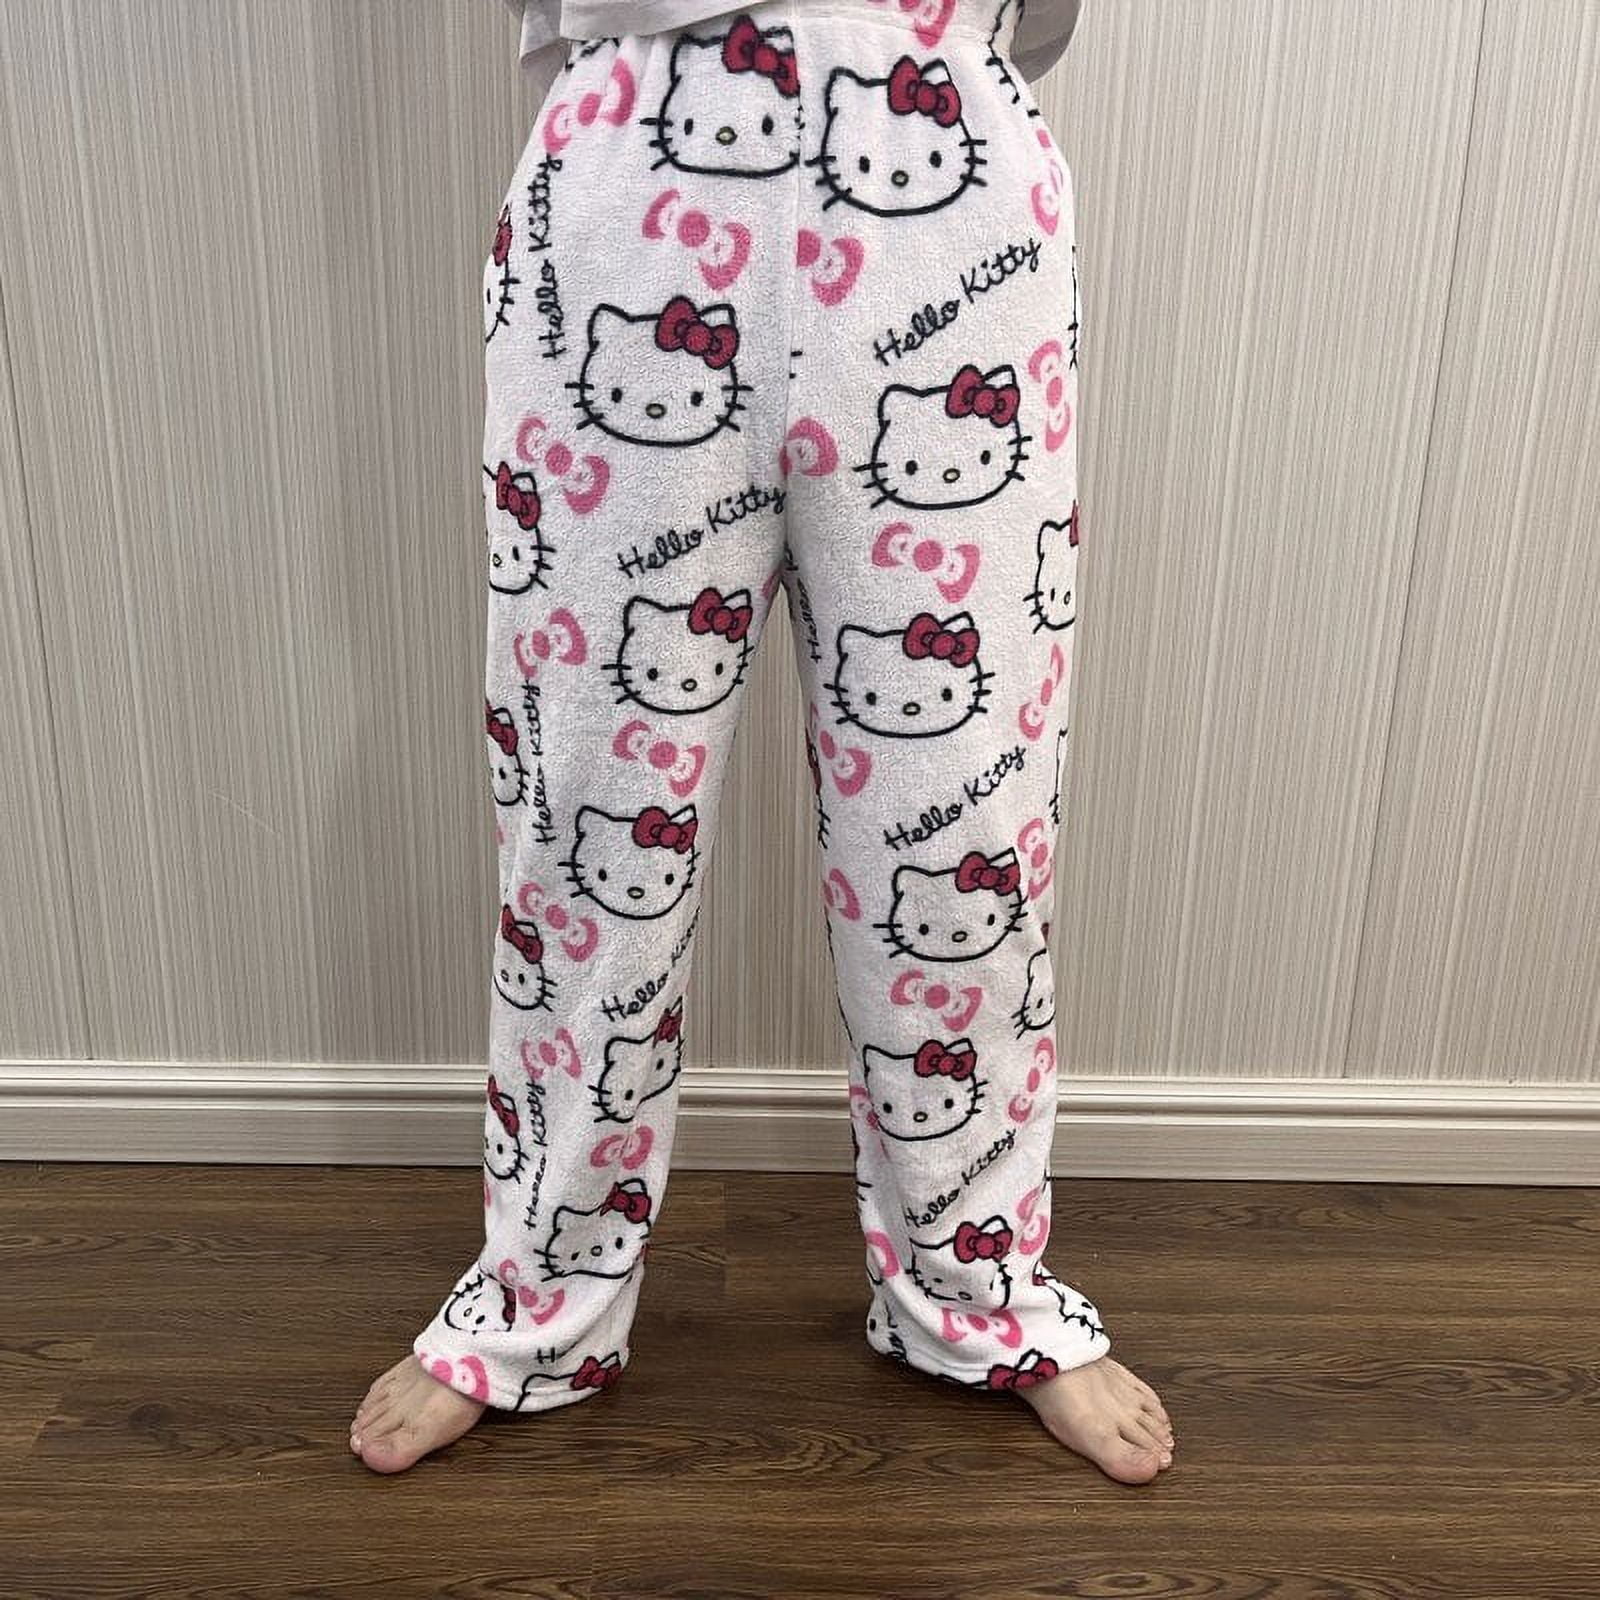 HelloKitty Pajama Pants Fairy Flannel Autumn Warm unisex pants Pant Fashion